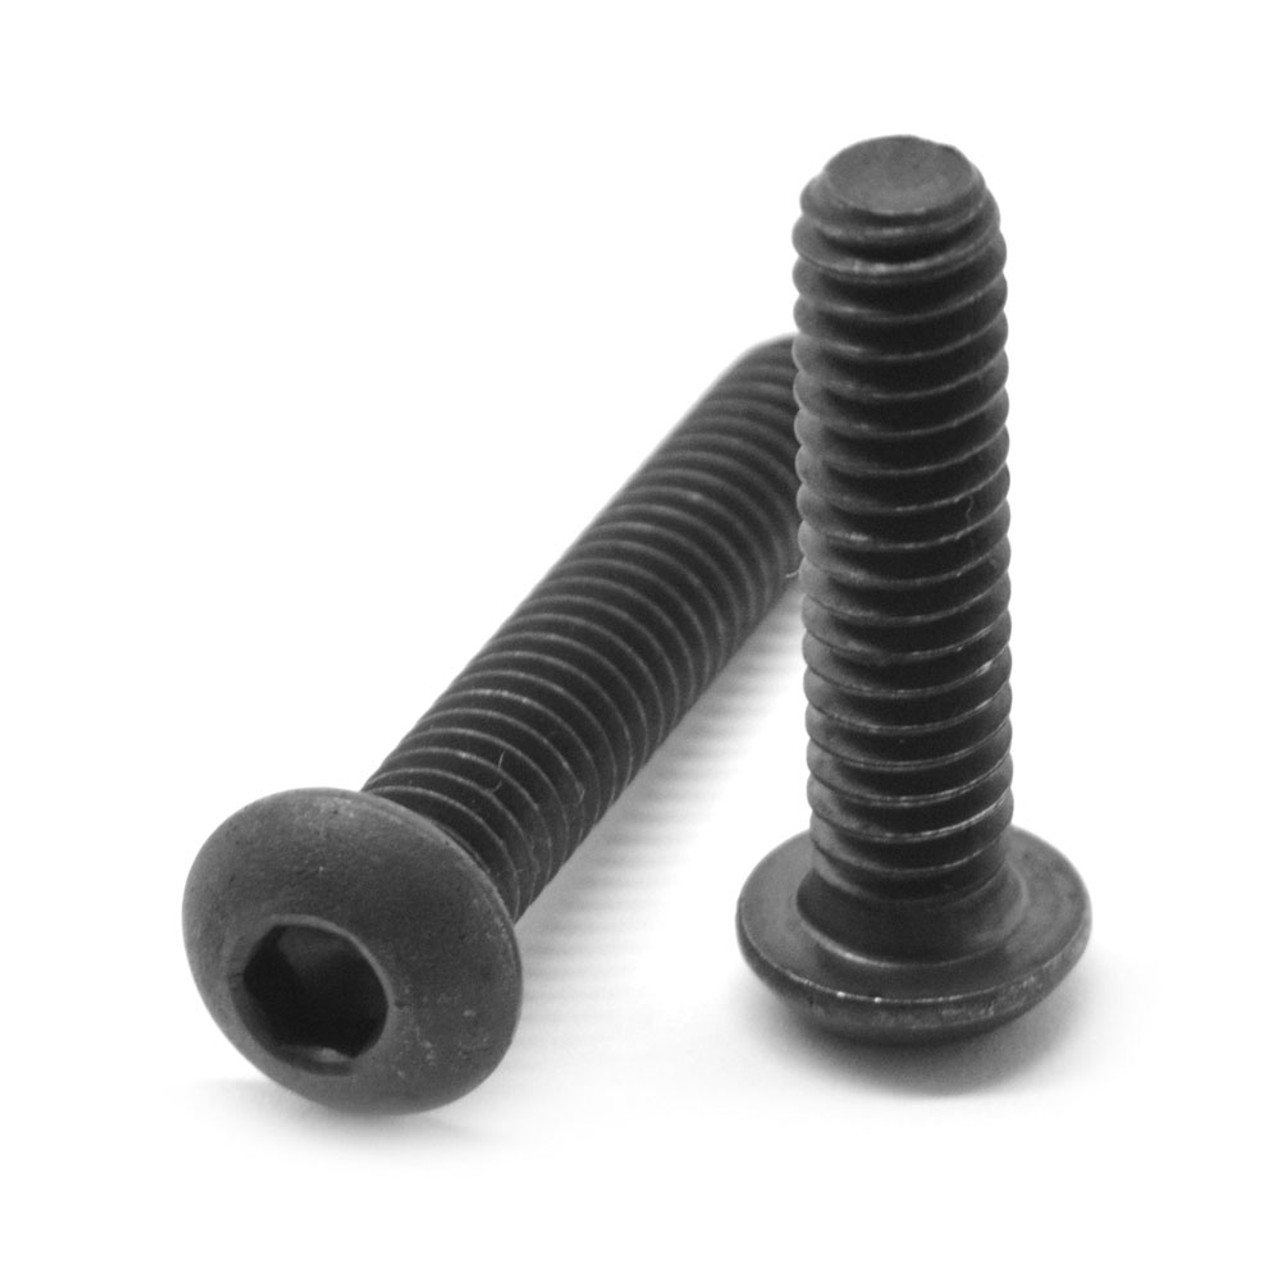 1/4"-20 x 5/16" (FT) Coarse Thread Socket Button Head Cap Screw Alloy Steel Black Oxide